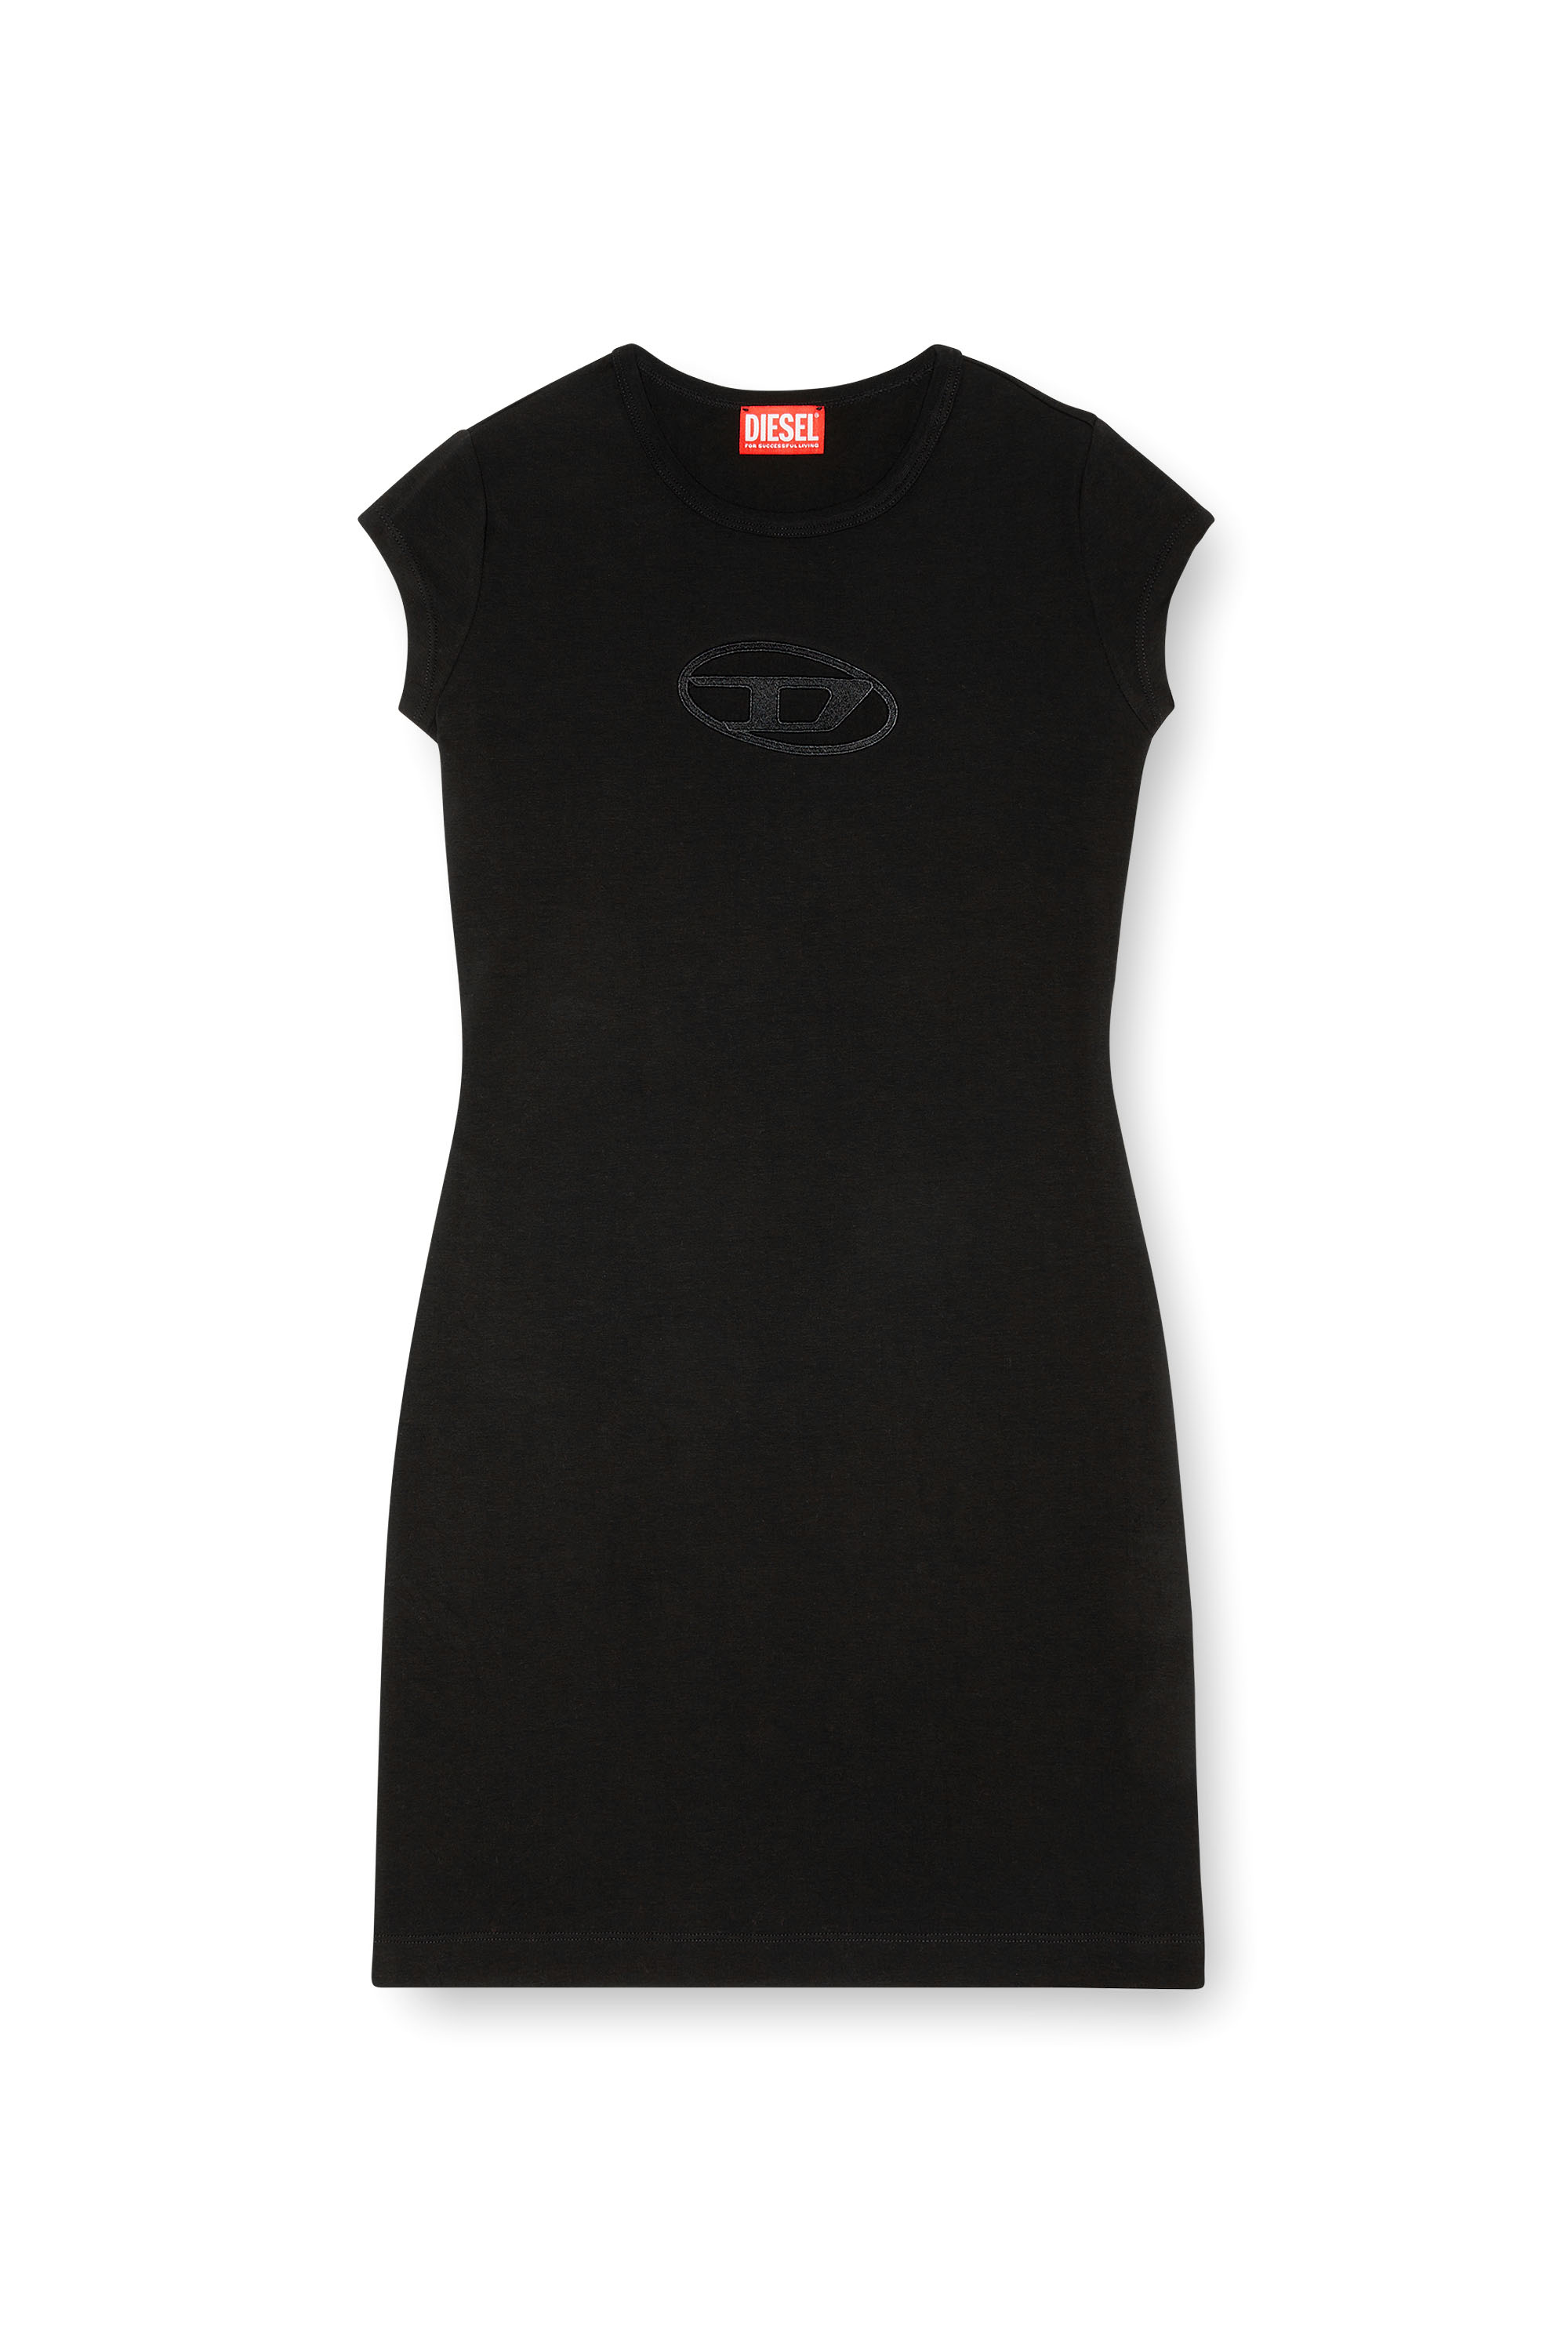 Diesel - D-ANGIEL, Mujer Vestido corto in Negro - Image 4